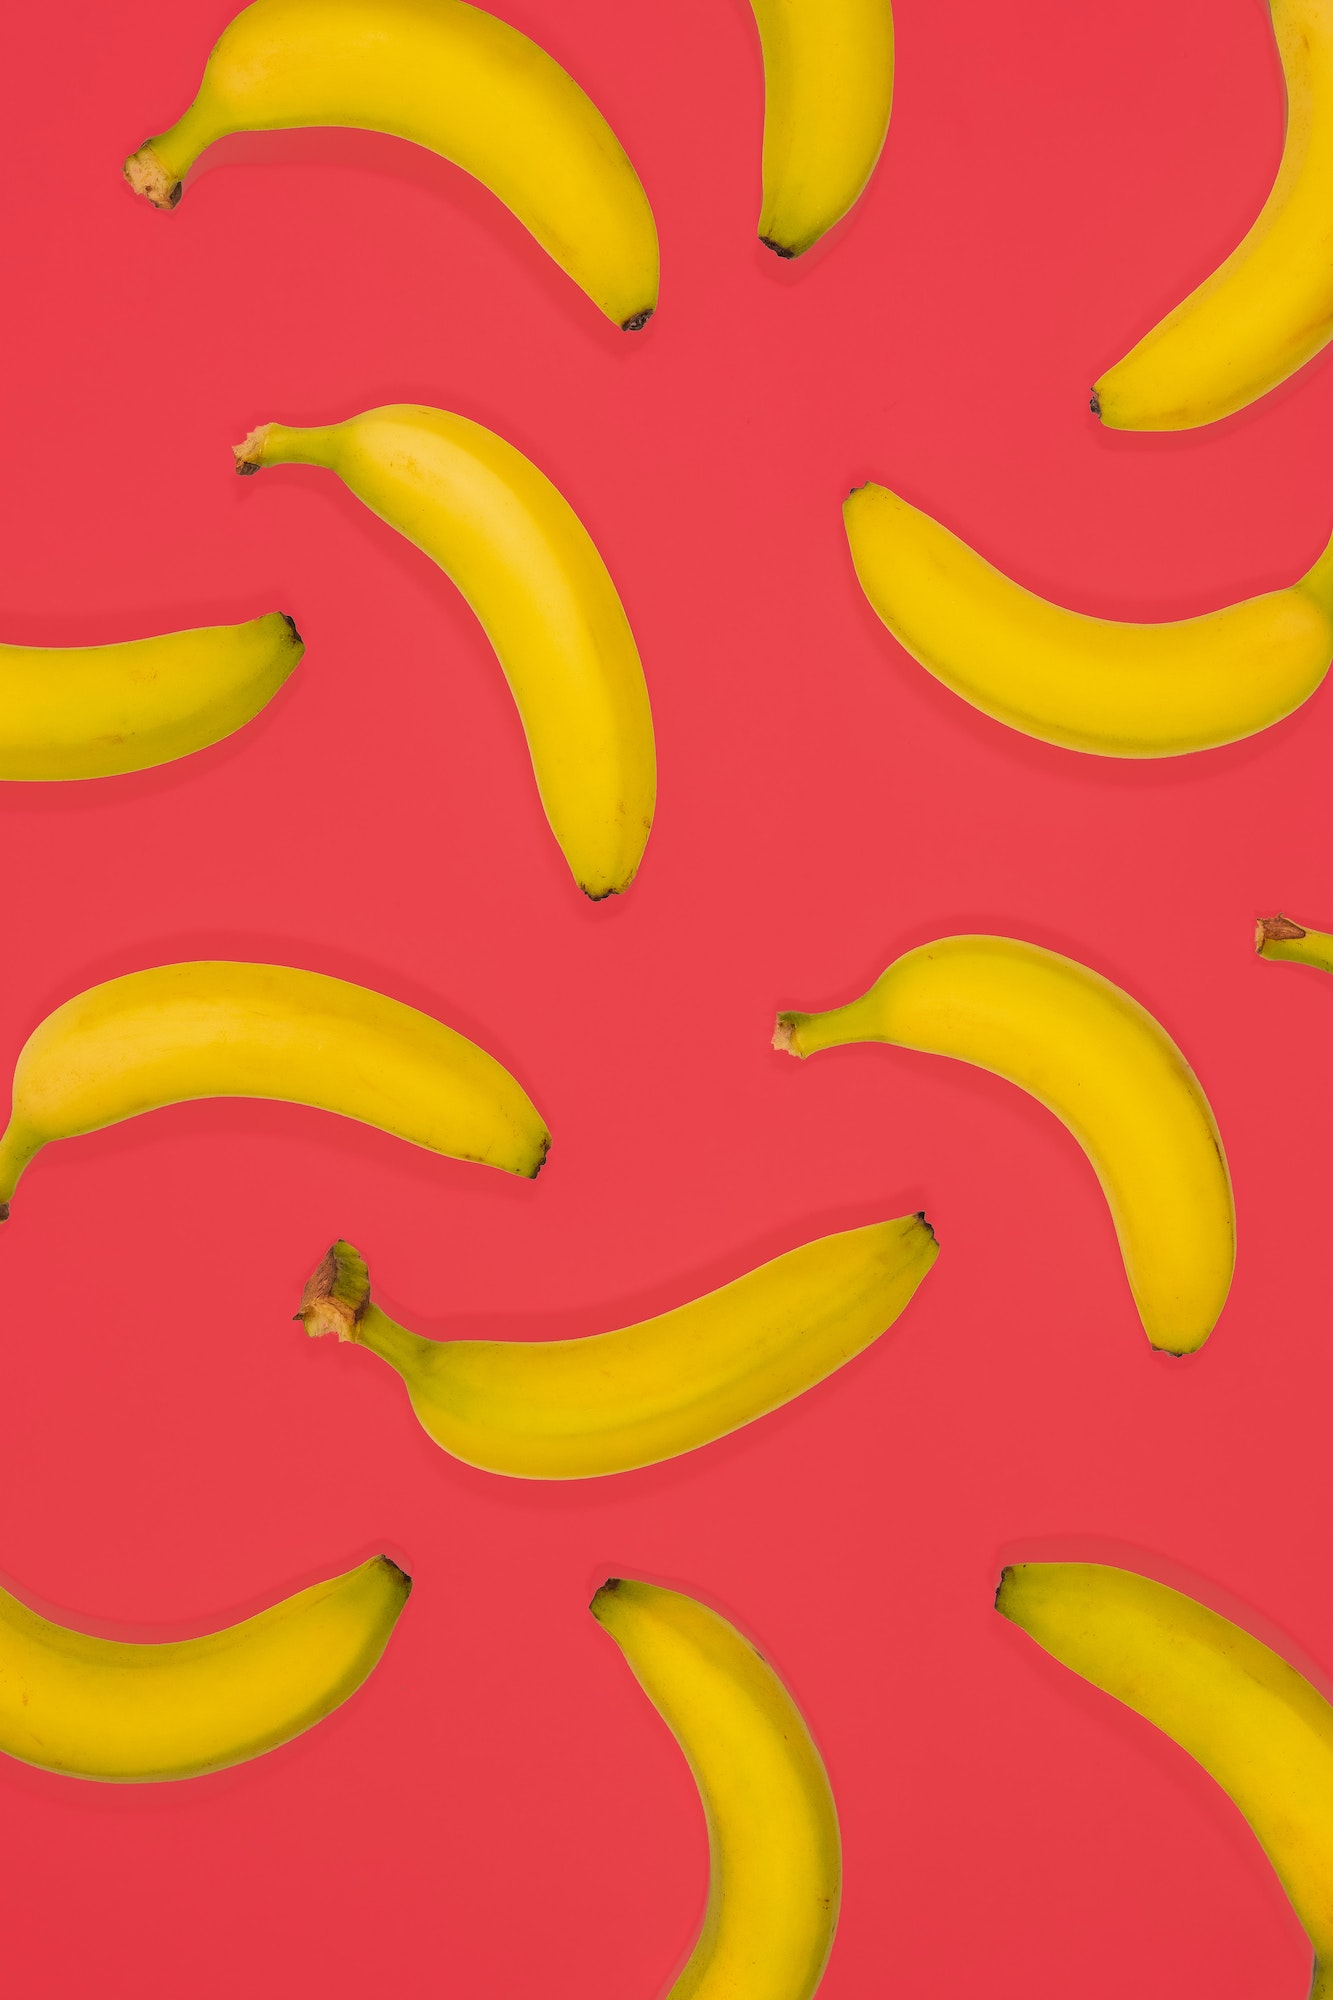 https://rankedthings.com/wp-content/uploads/2022/08/Banana.jpg